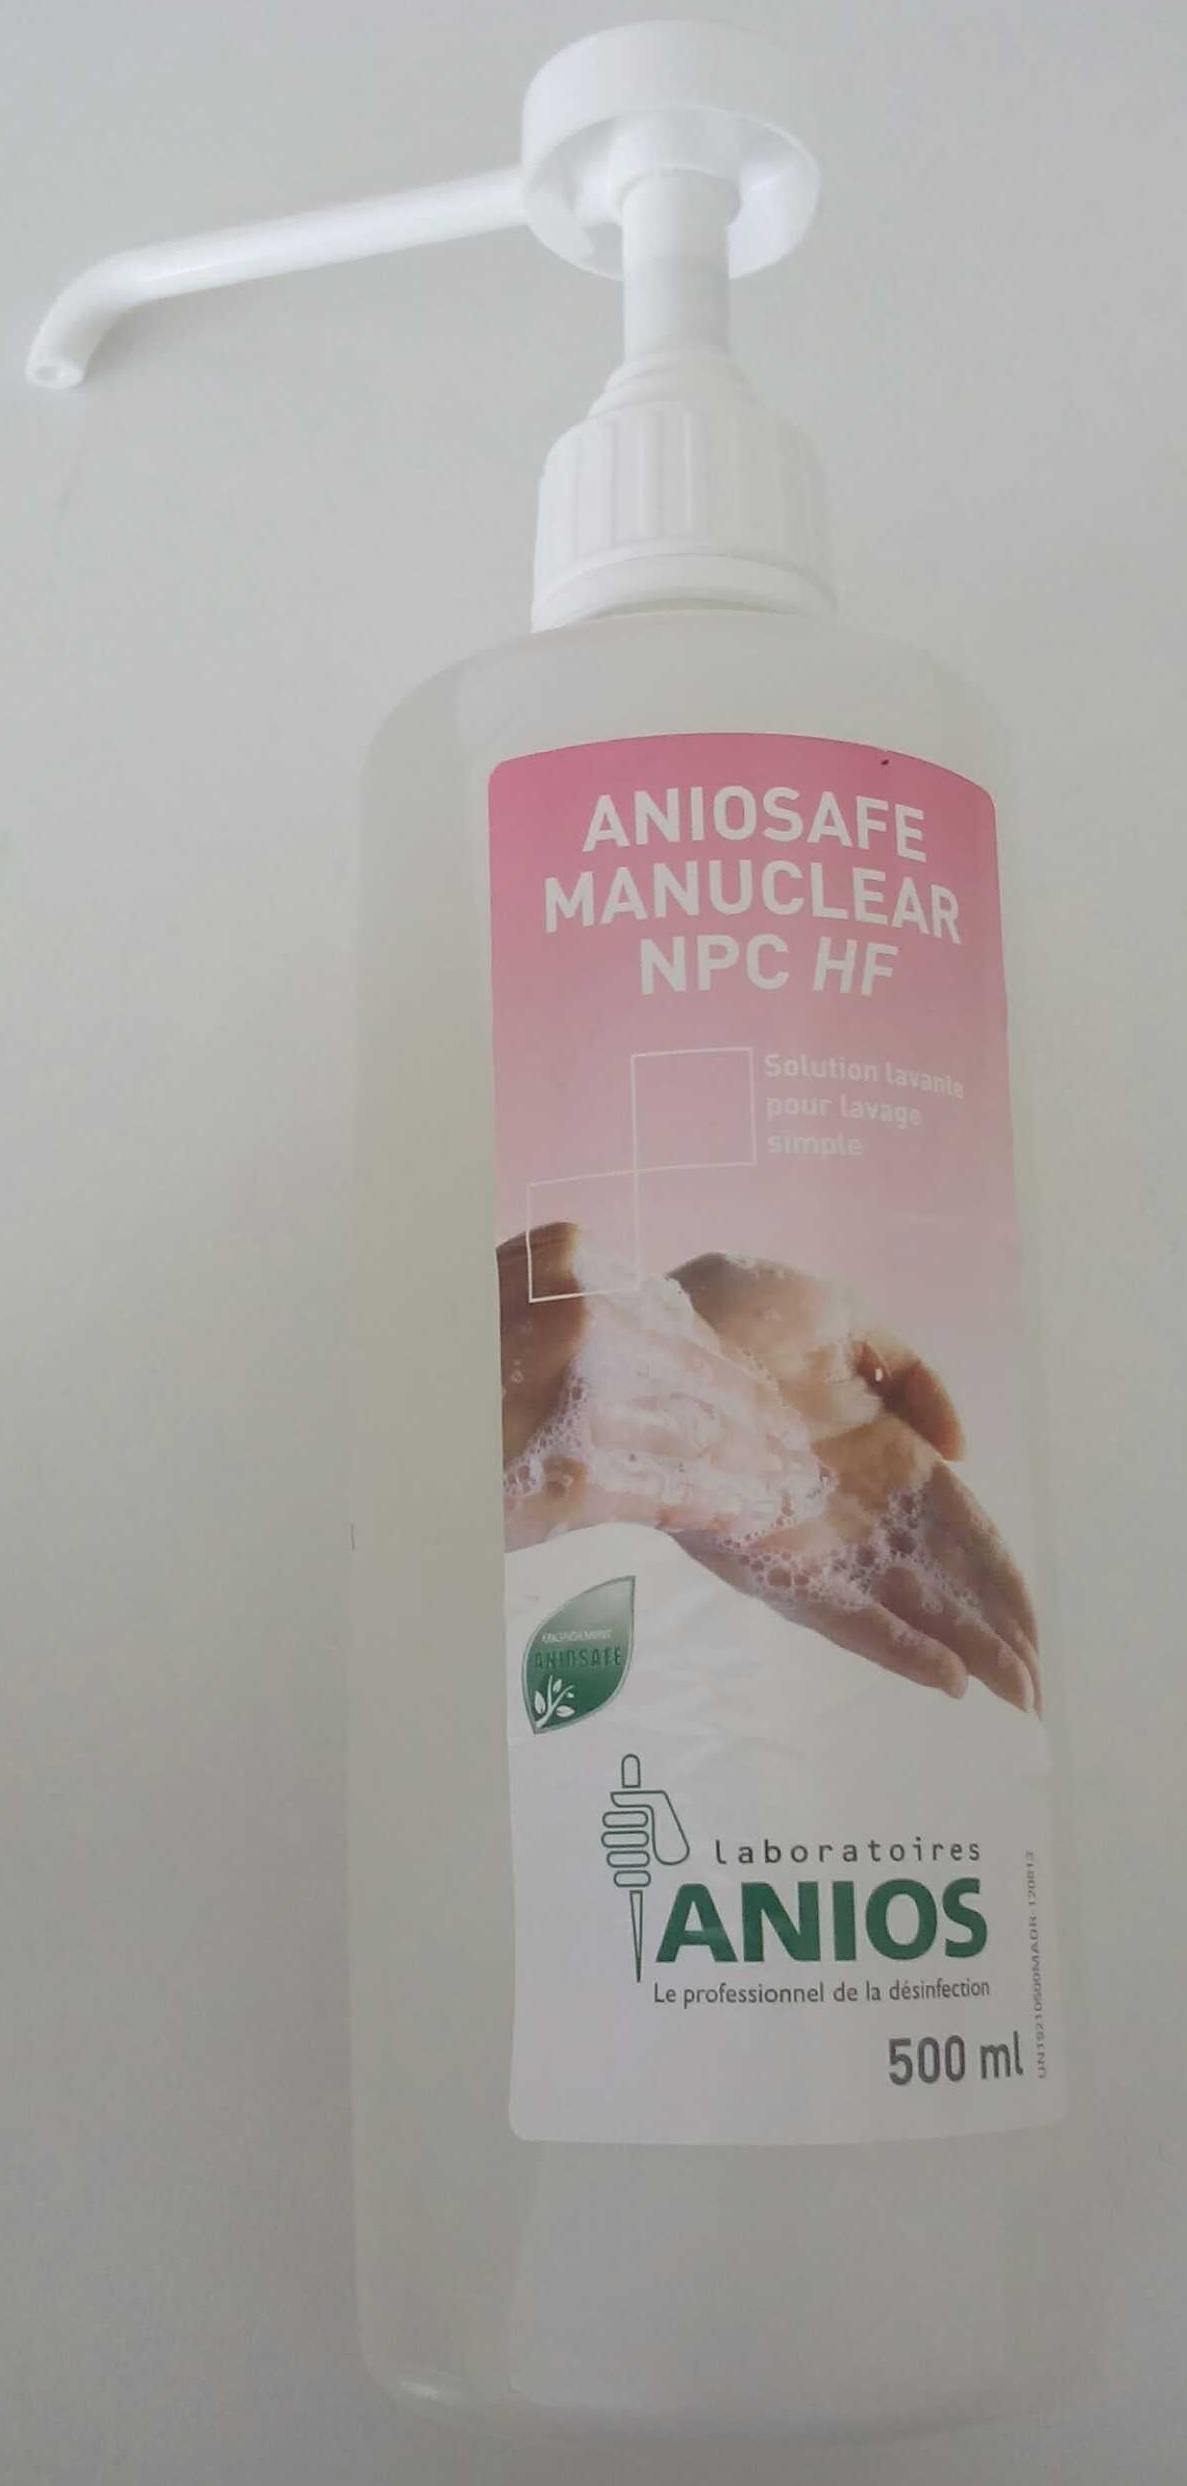 Aniosafe Manuclear NPC HF - Produit - fr